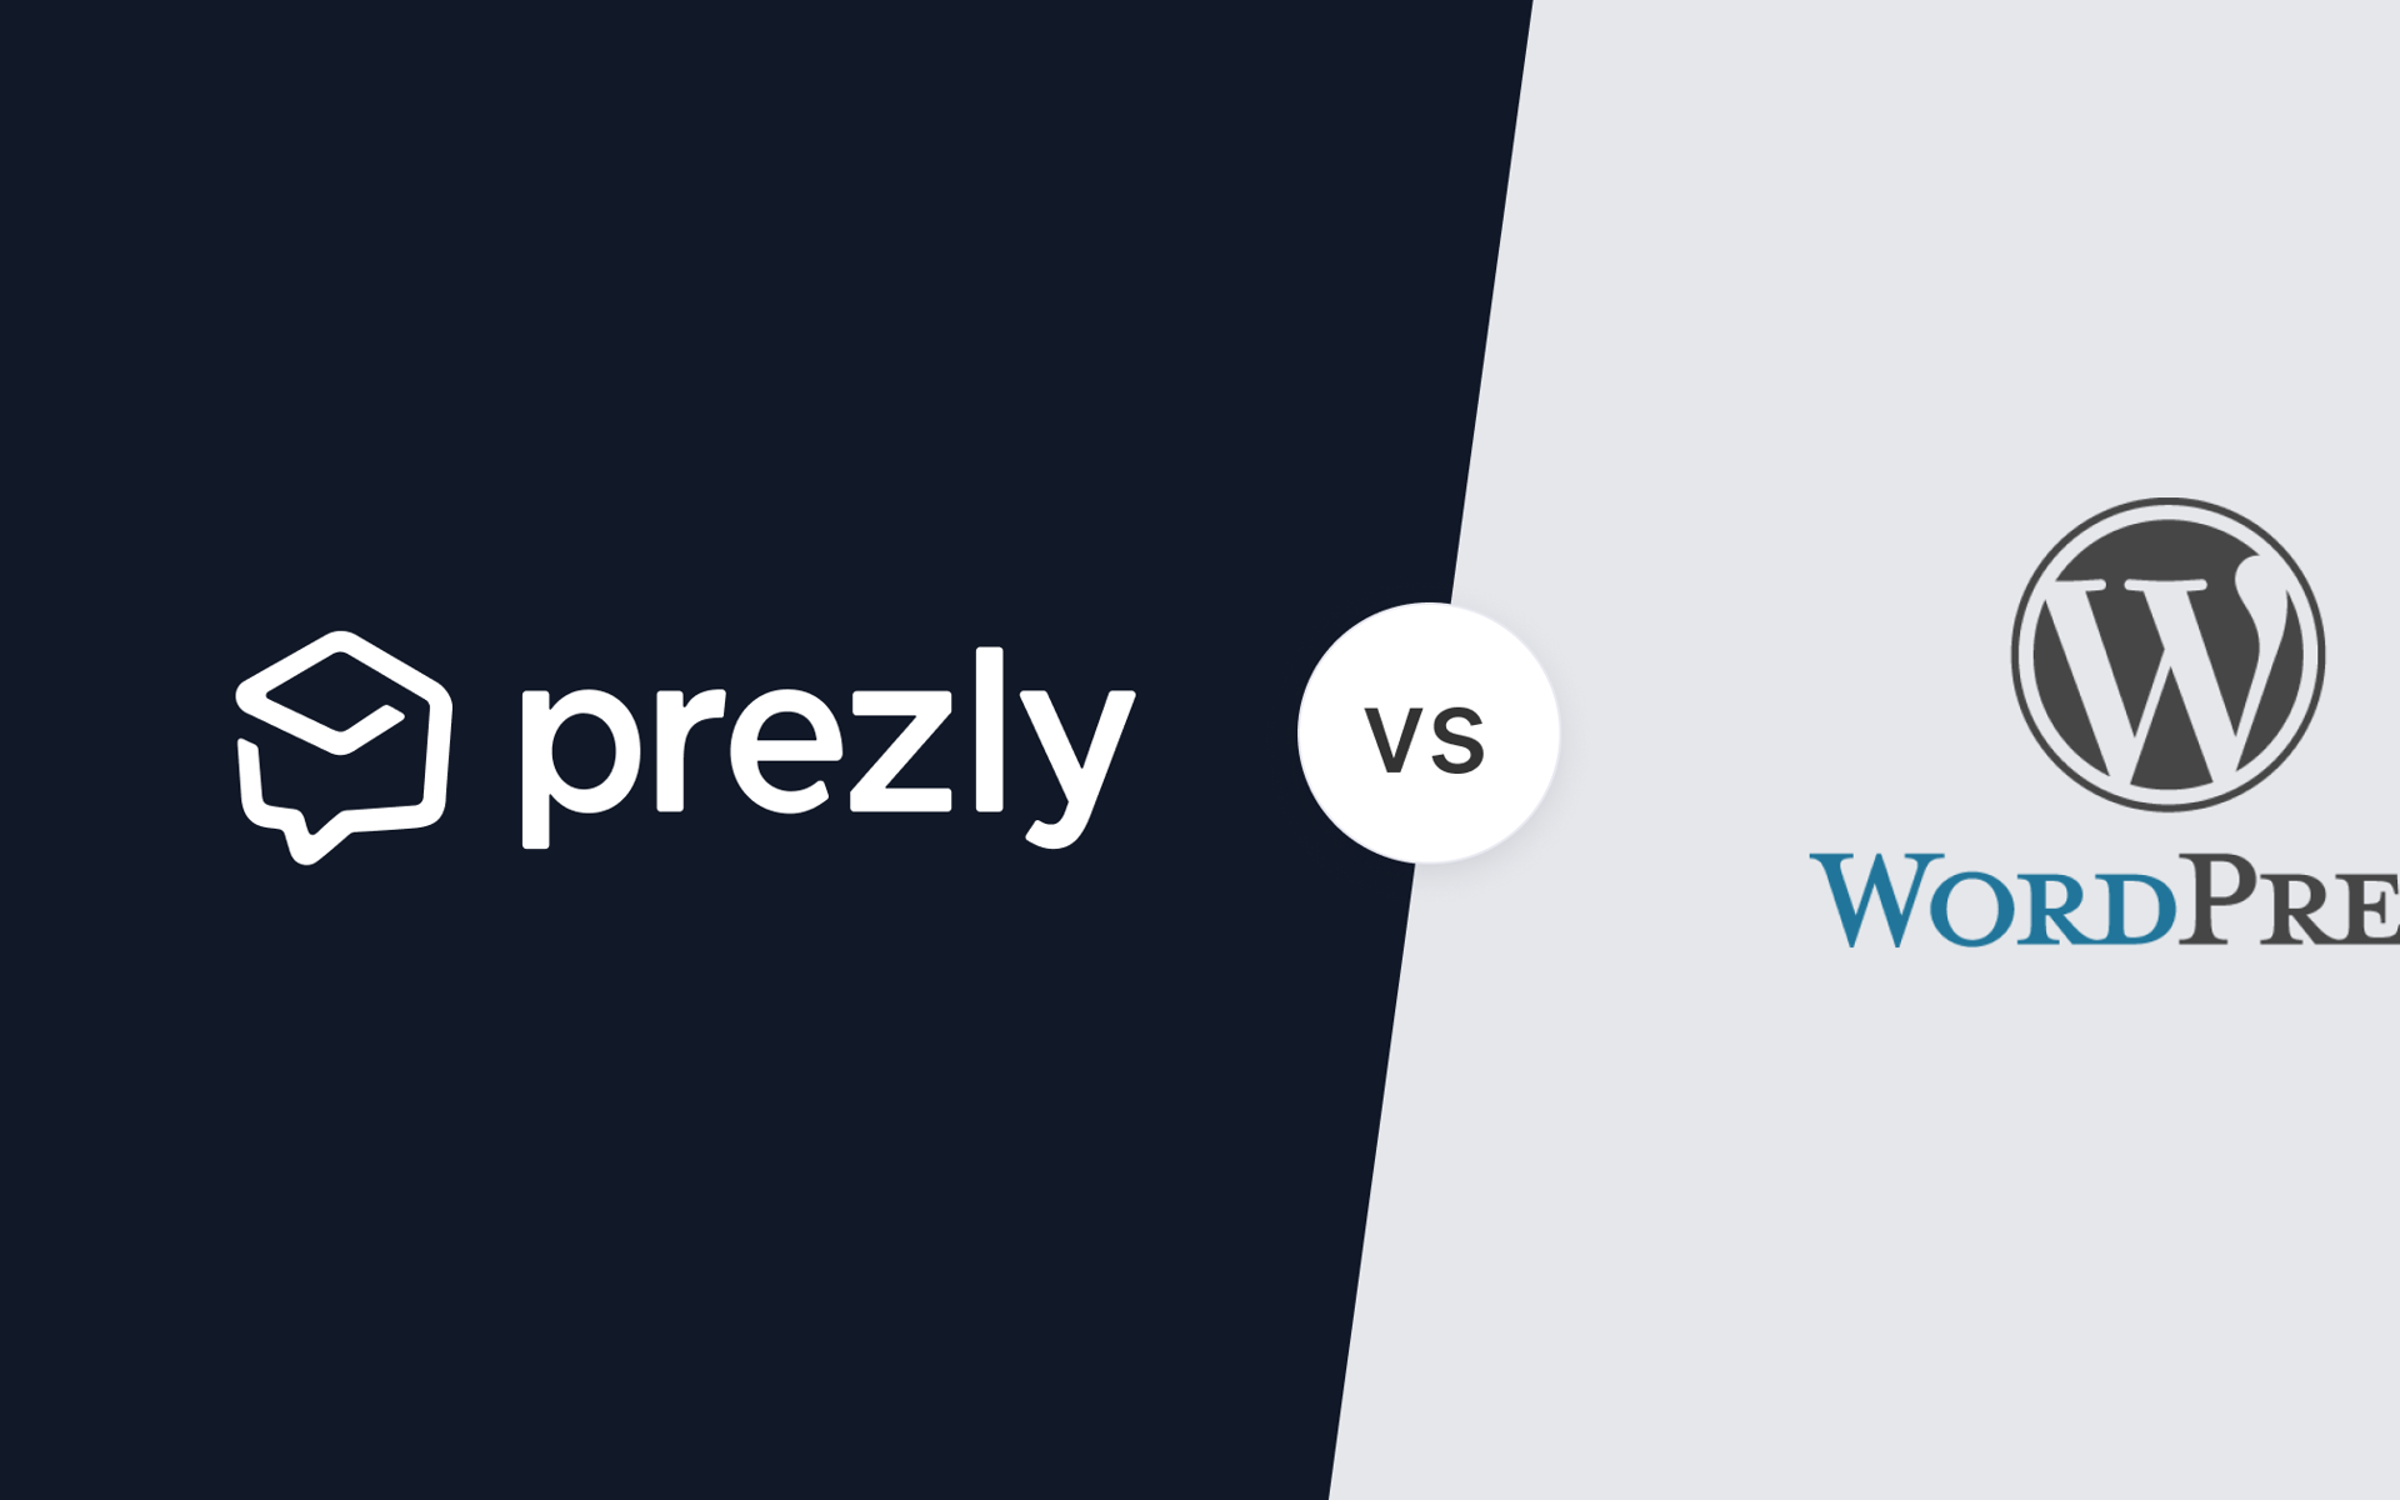 Prezly vs WordPress